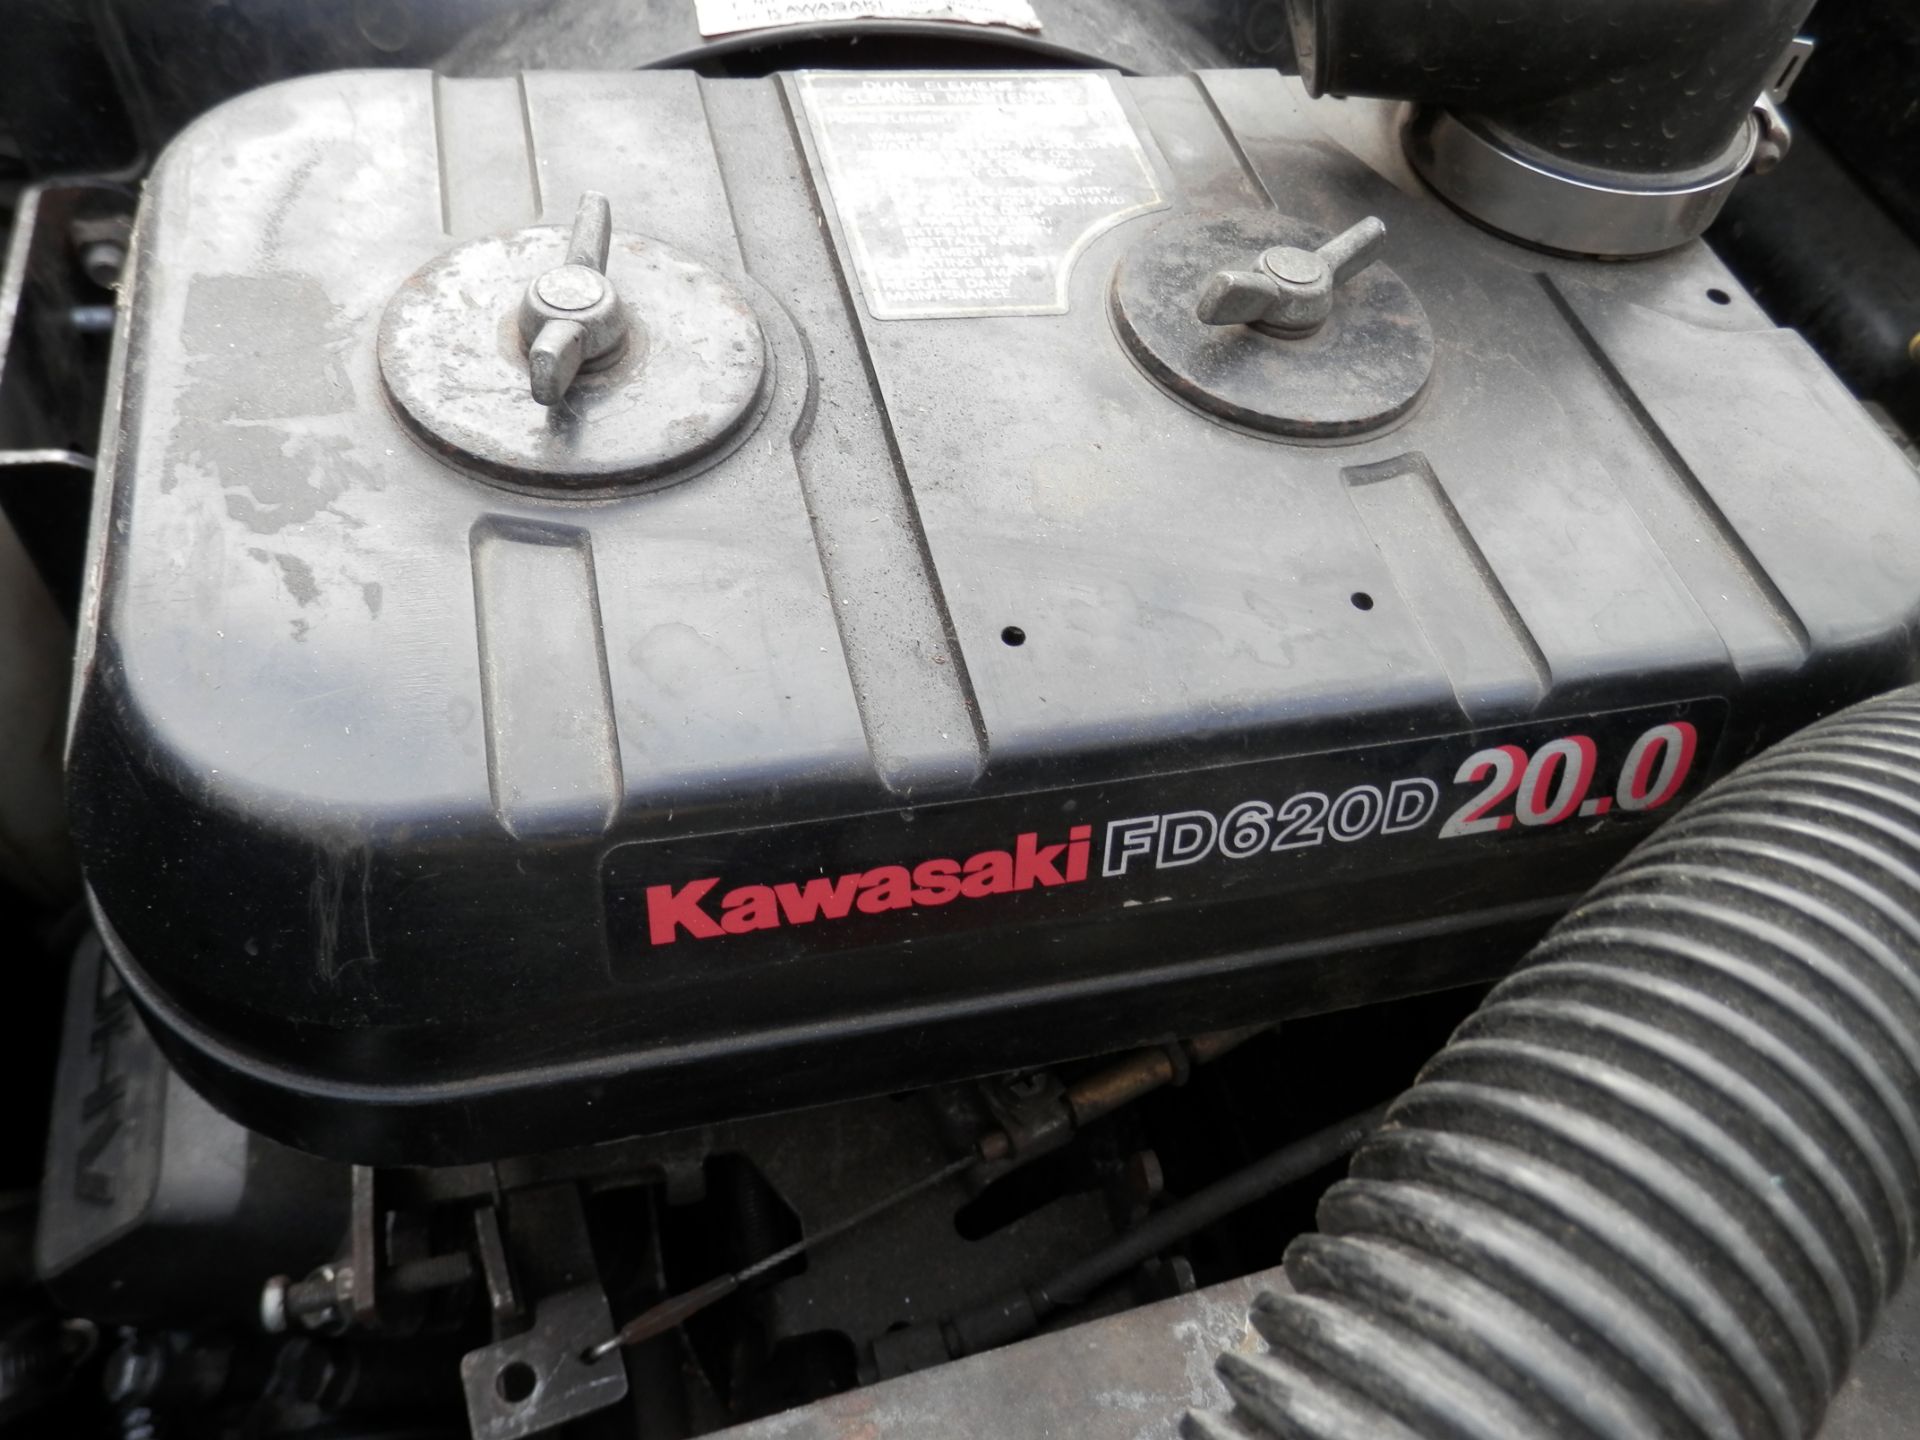 1998 ARGO AQUABUG, 20 BHP KAWASAKI ENGINED V-VTWIN PETROL. LAND OR WATER - Image 4 of 12